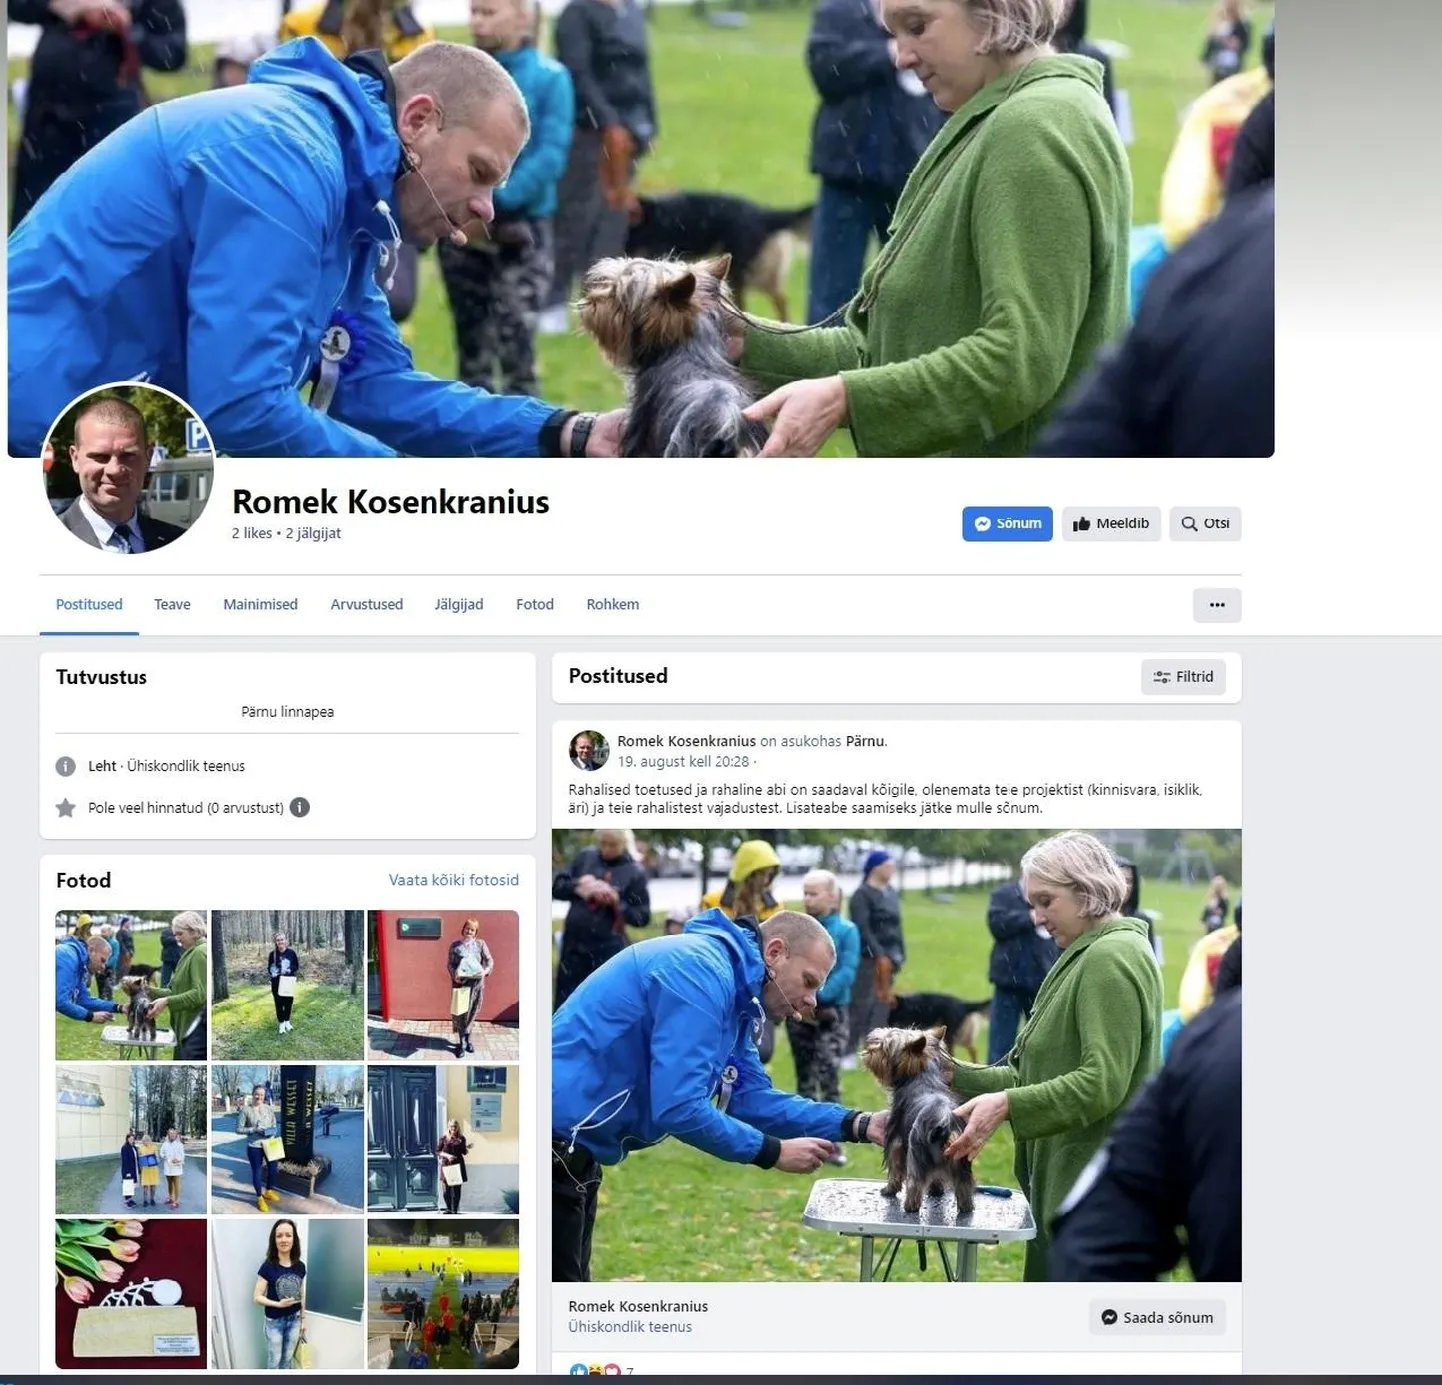 В субботу в Facebook был зарегистрирован аккаунт мэра Пярну Ромека Козенкраниуса, через который стали предлагать кредиты.